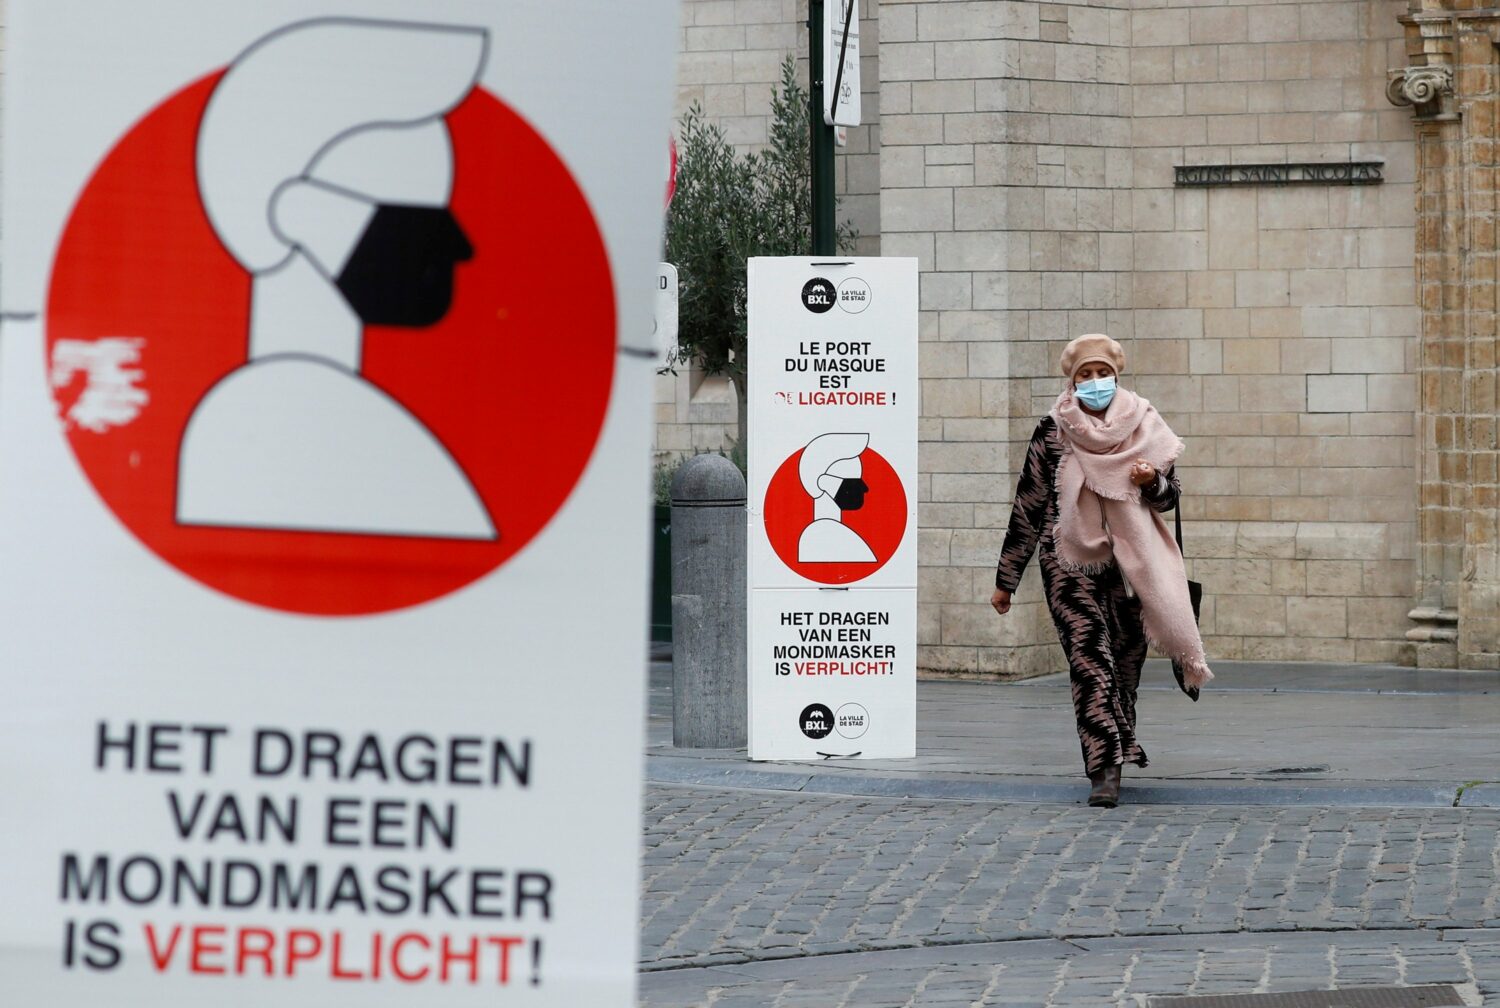 Βέλγιο: Η αναζωπύρωση της επιδημίας ξεπερνά "τις πιο απαισιόδοξες προβλέψεις" των ειδικών